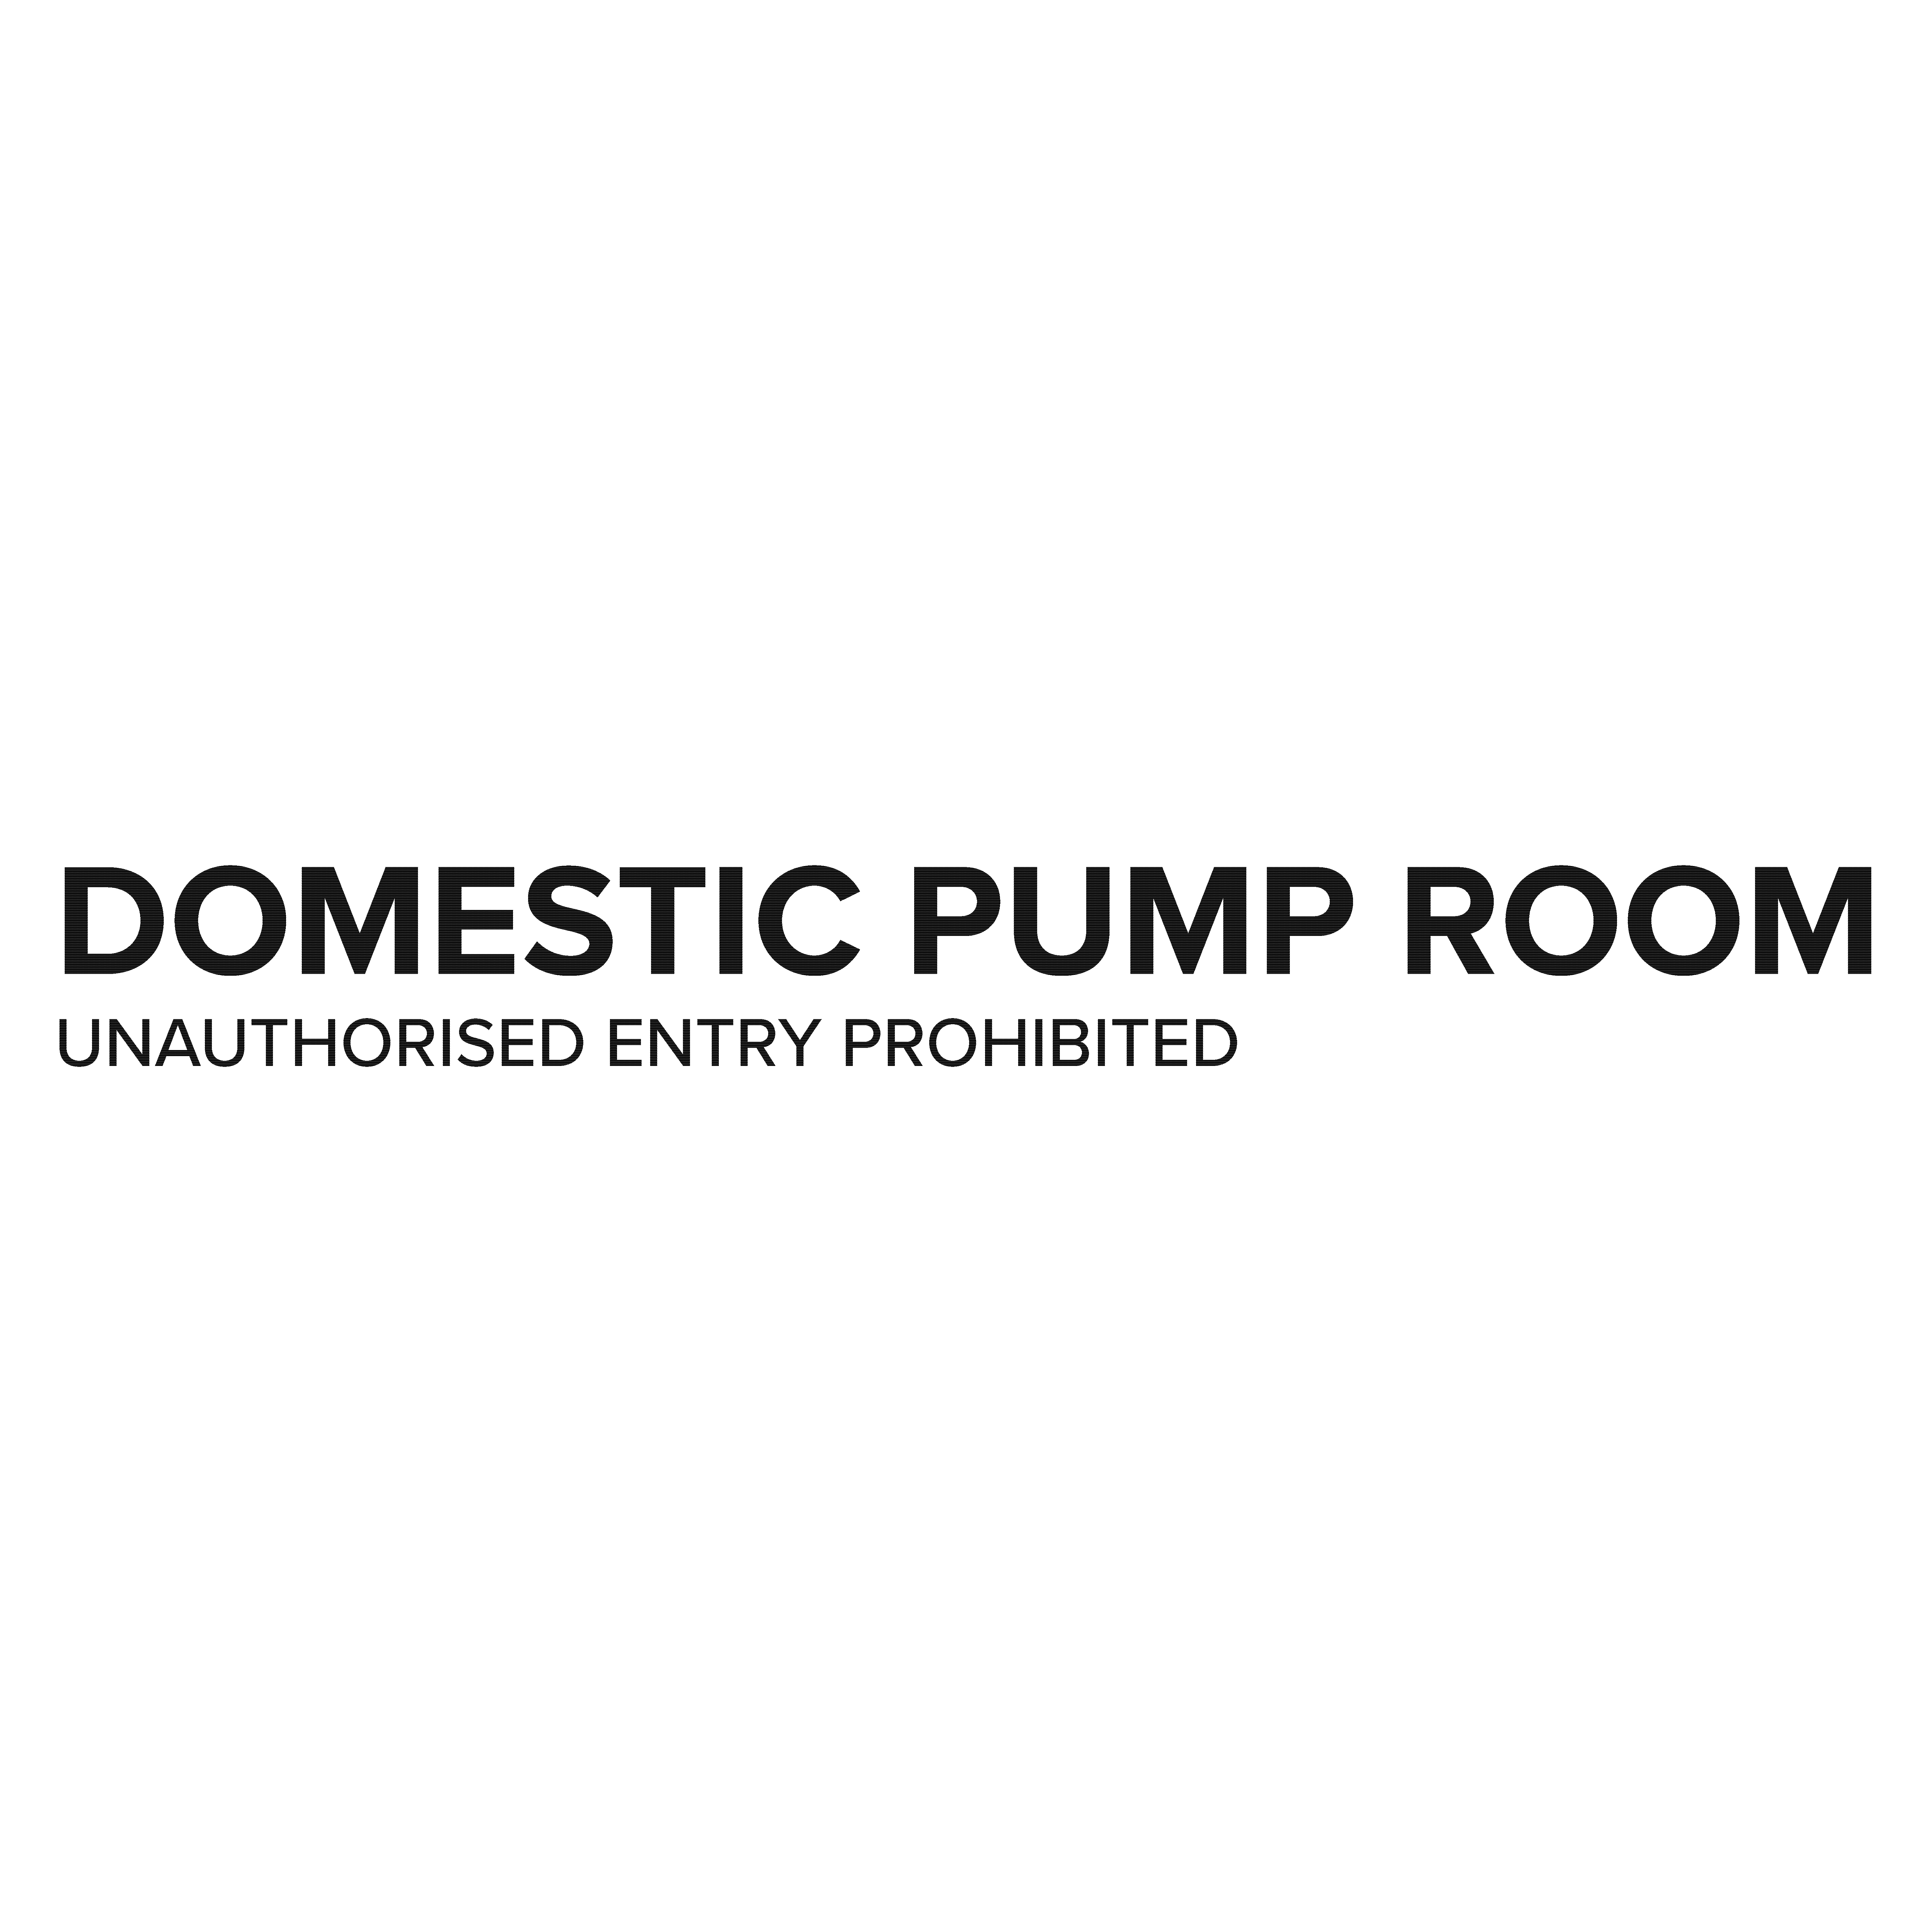 DOMESTIC PUMP ROOMS